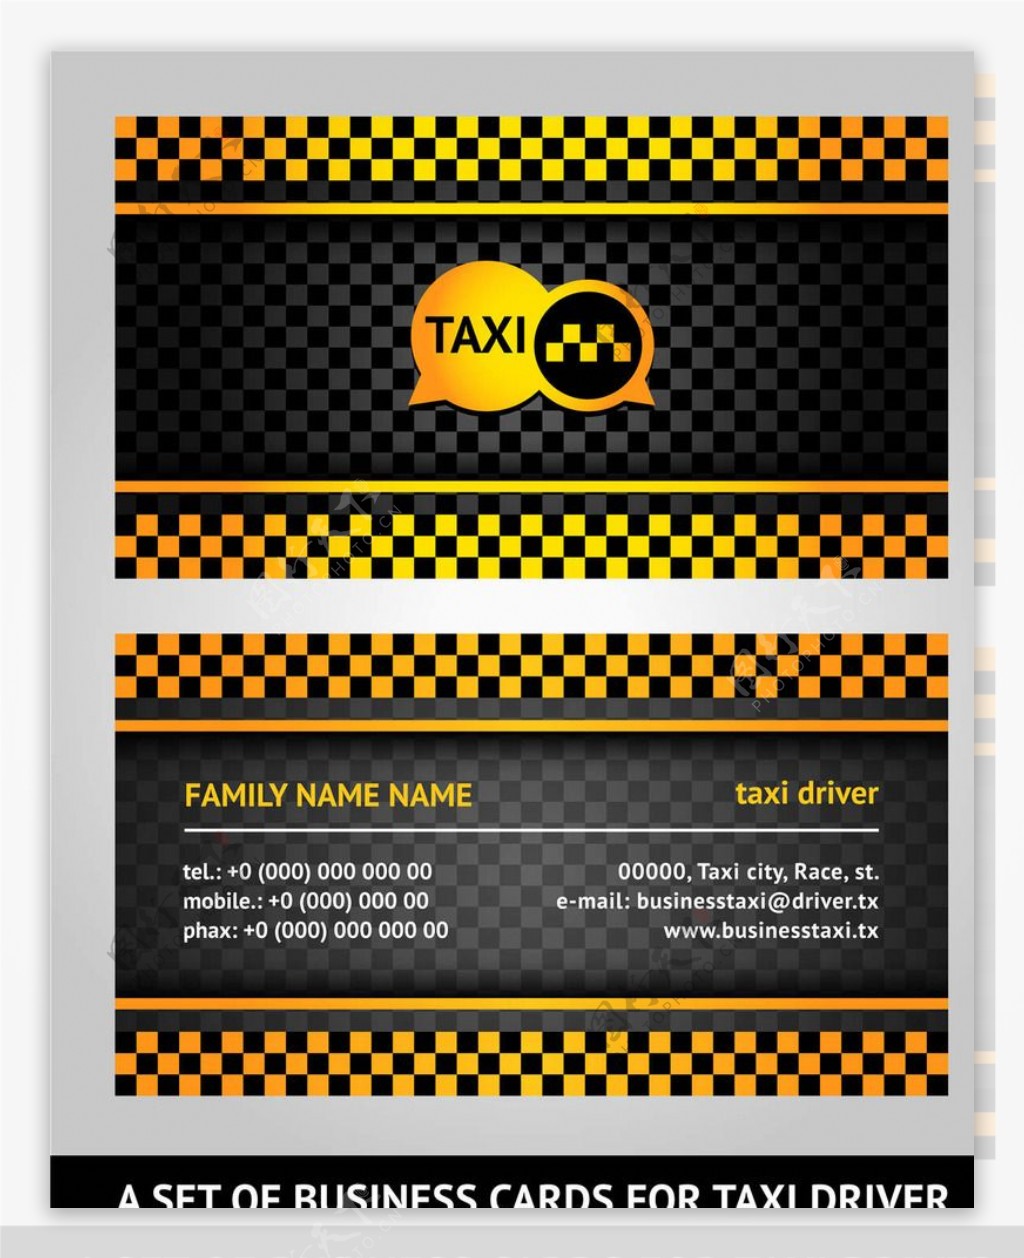 出租车名片图片